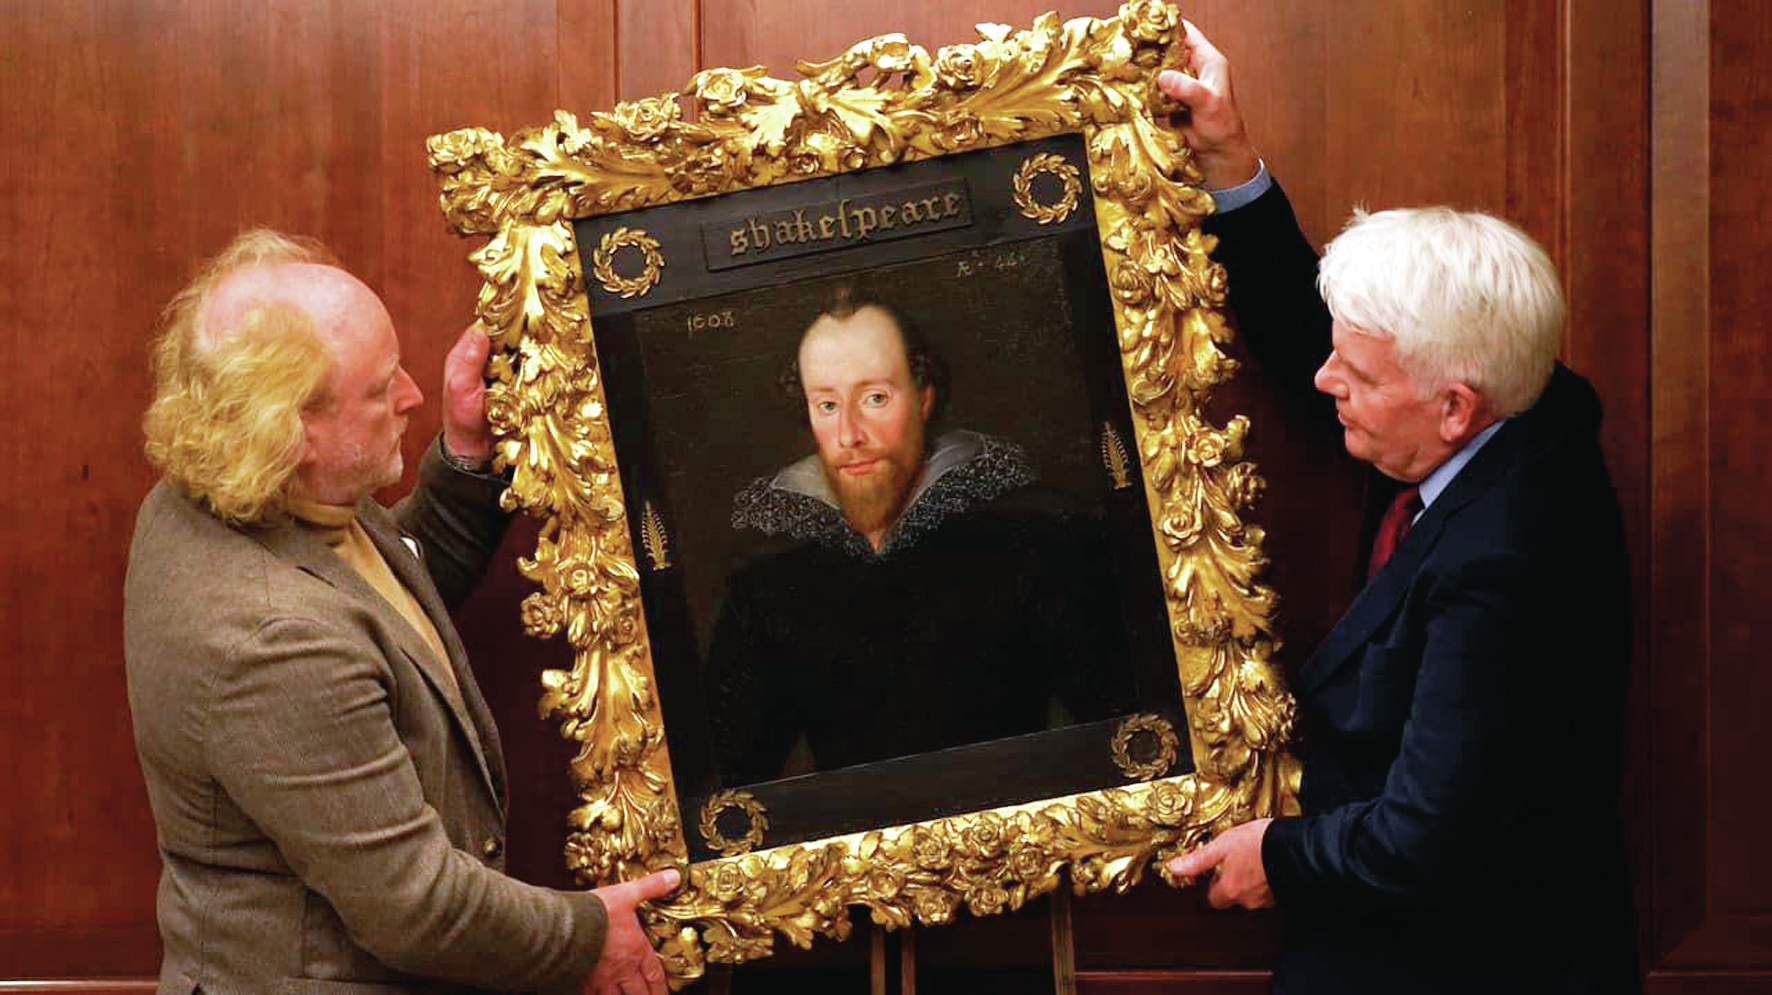 Quadro de Shakespeare à venda por mais de 11 milhões